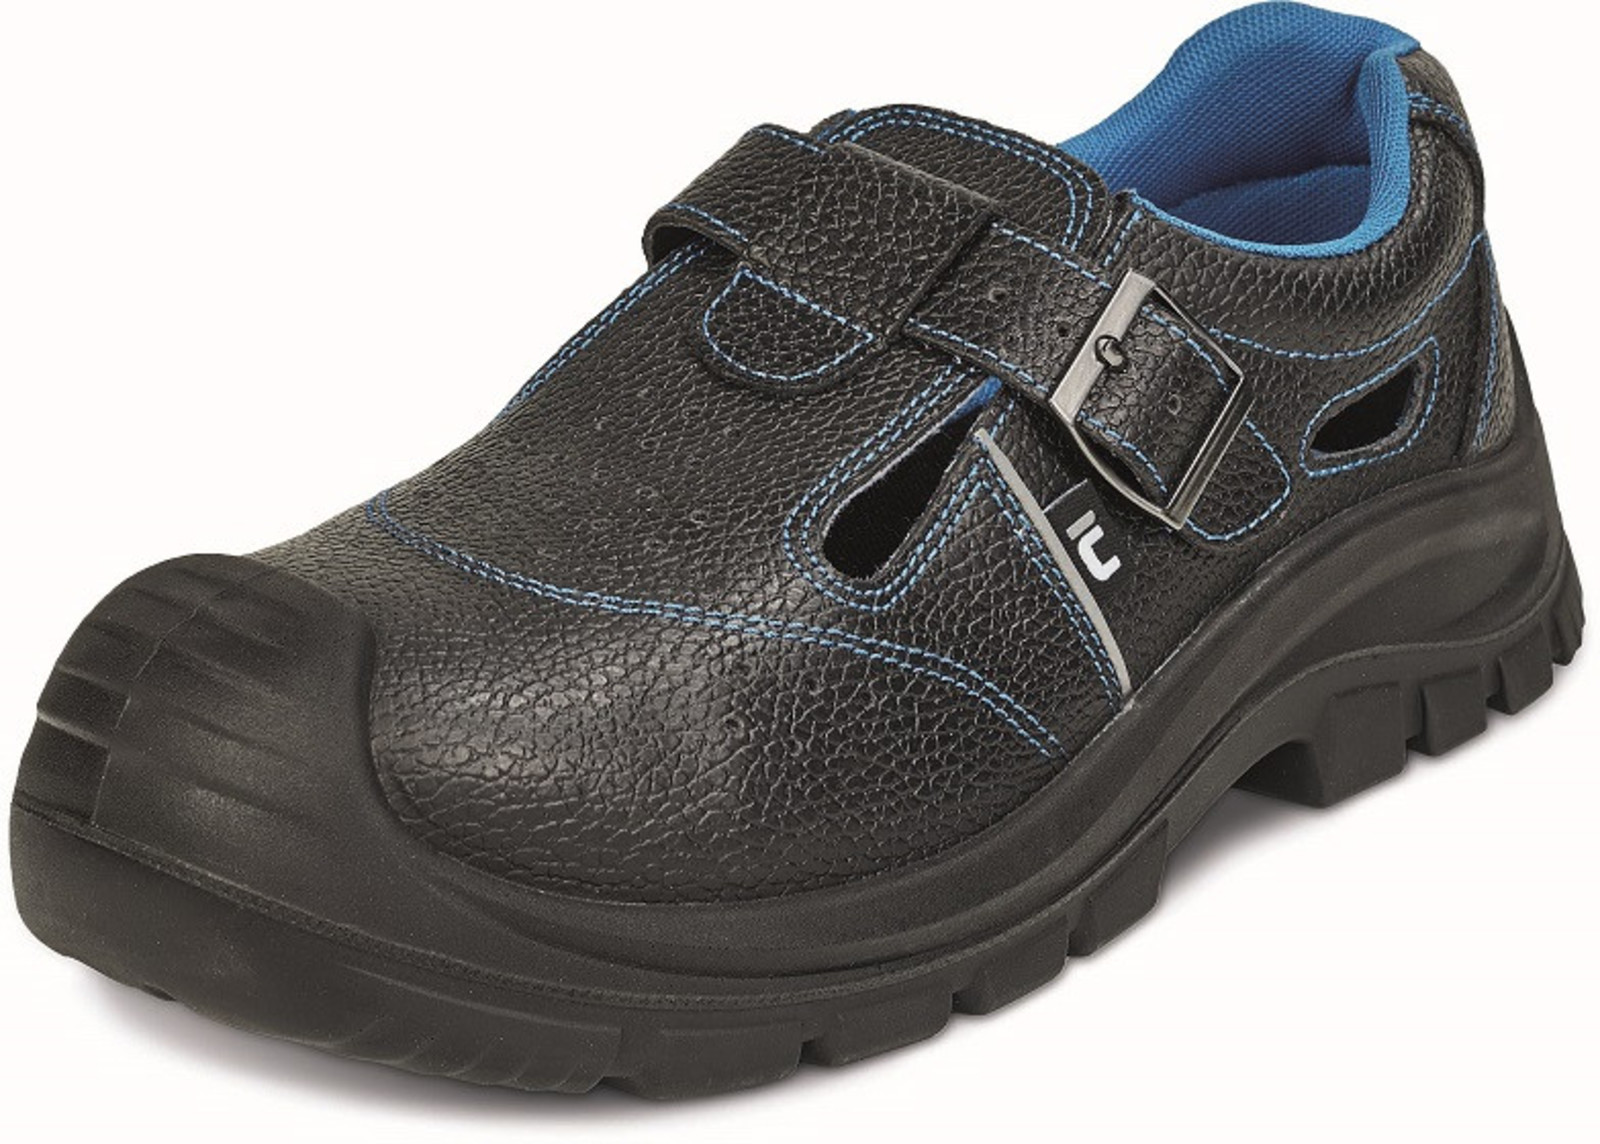 Bezpečnostné sandále Raven XT S1P - veľkosť: 36, farba: čierna